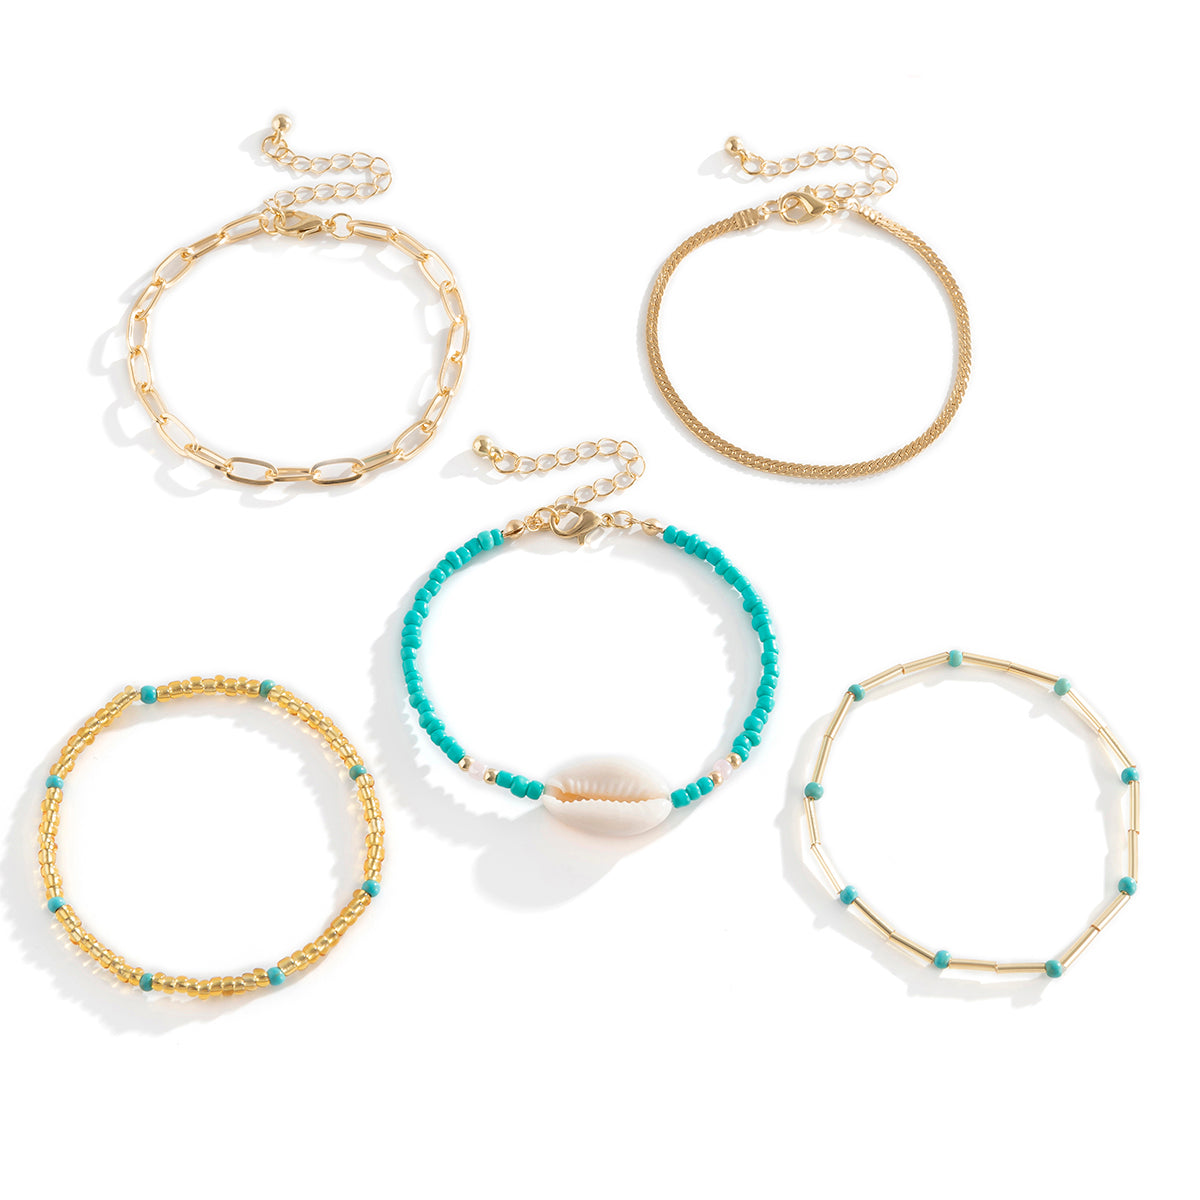 Damen Trendy Armband Set 5-Fach gold mit Muscheln& Perlen Schmuck einzel tragbar Längenverstellbar Verstellbar Blaue Kette Sommer Armband